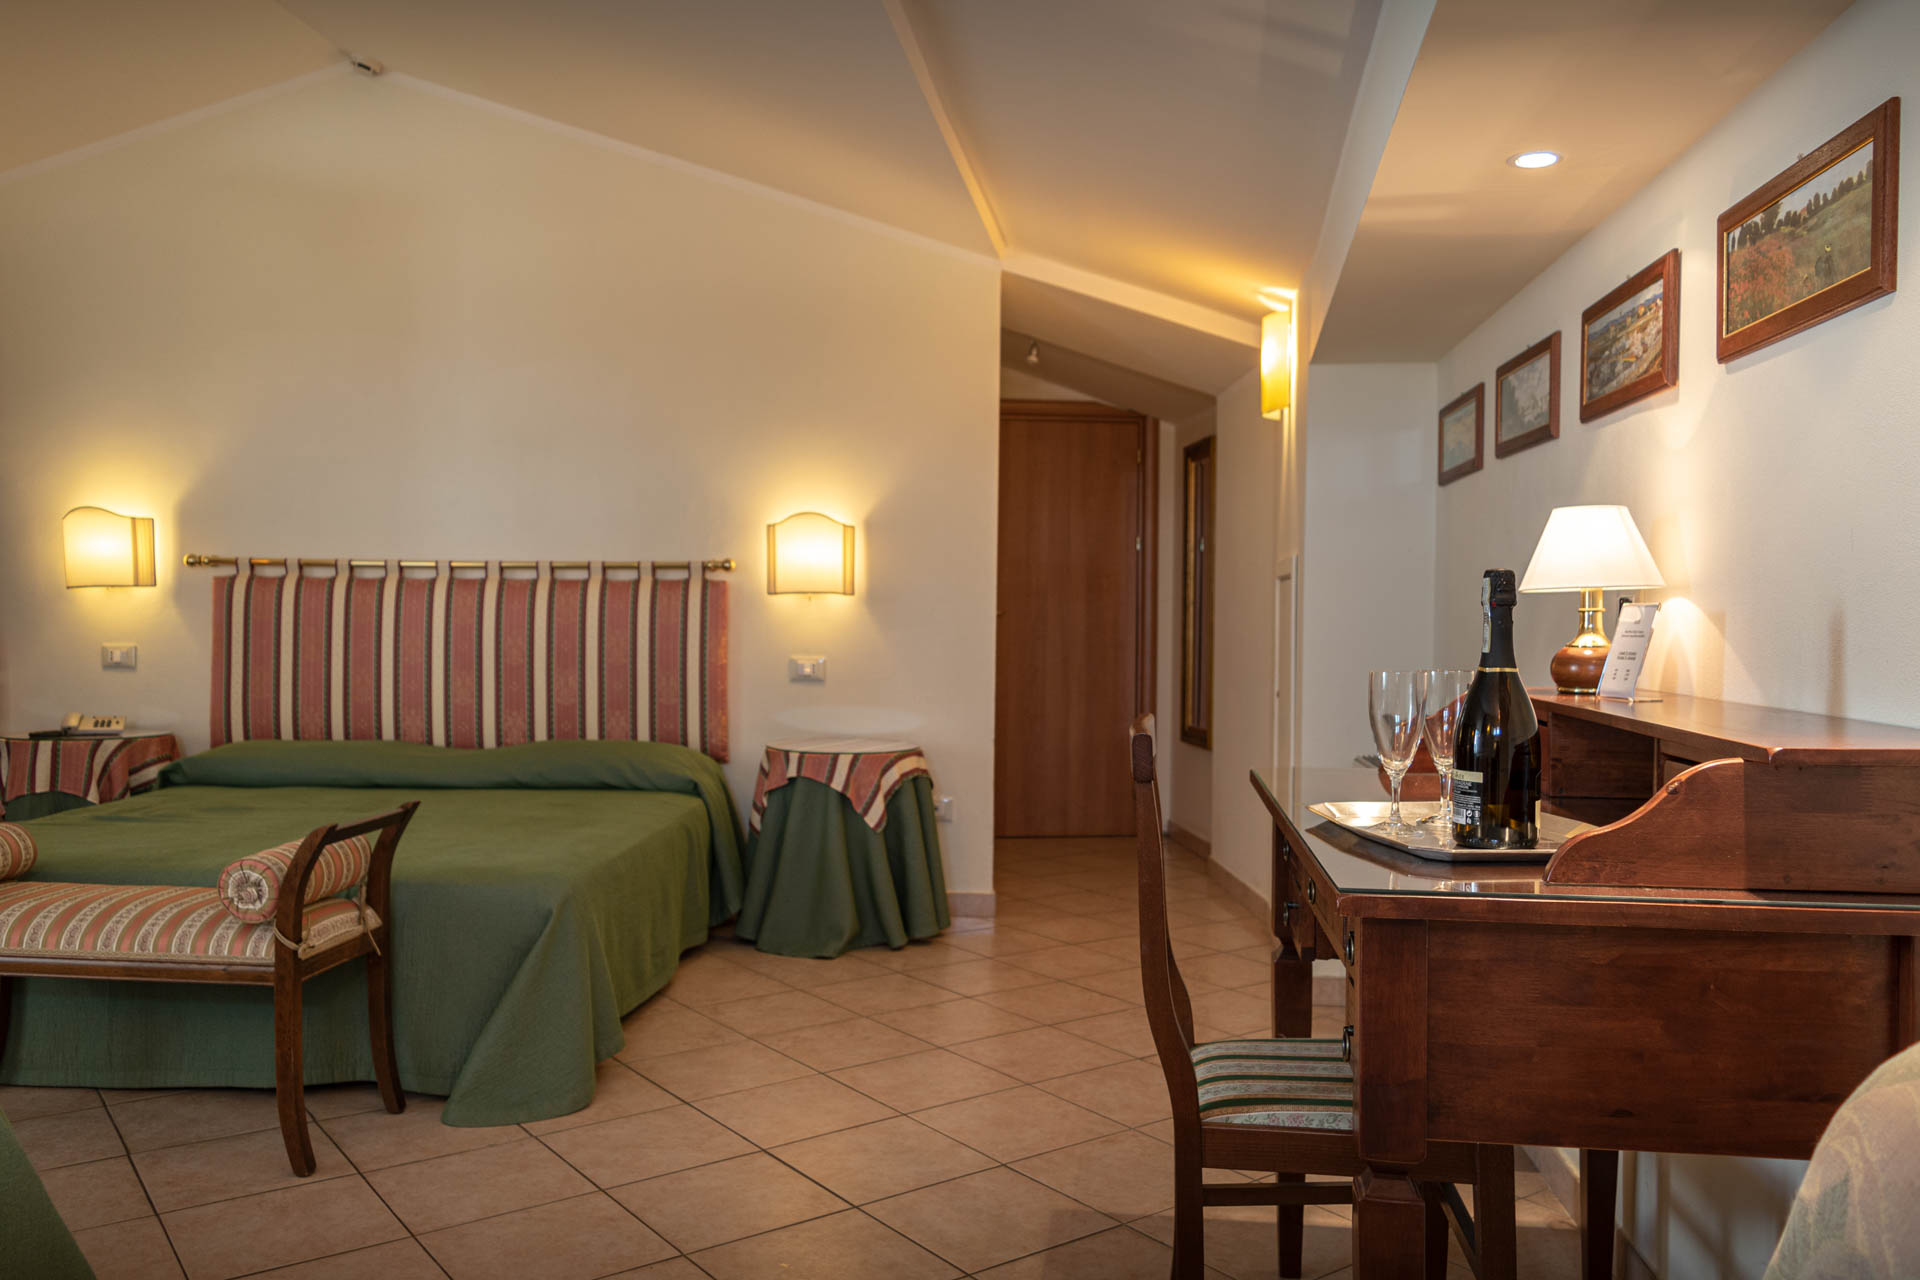 Camera tripla - Panoramica della stanza | Hotel Umbra tre stelle nel centro storico di Assisi